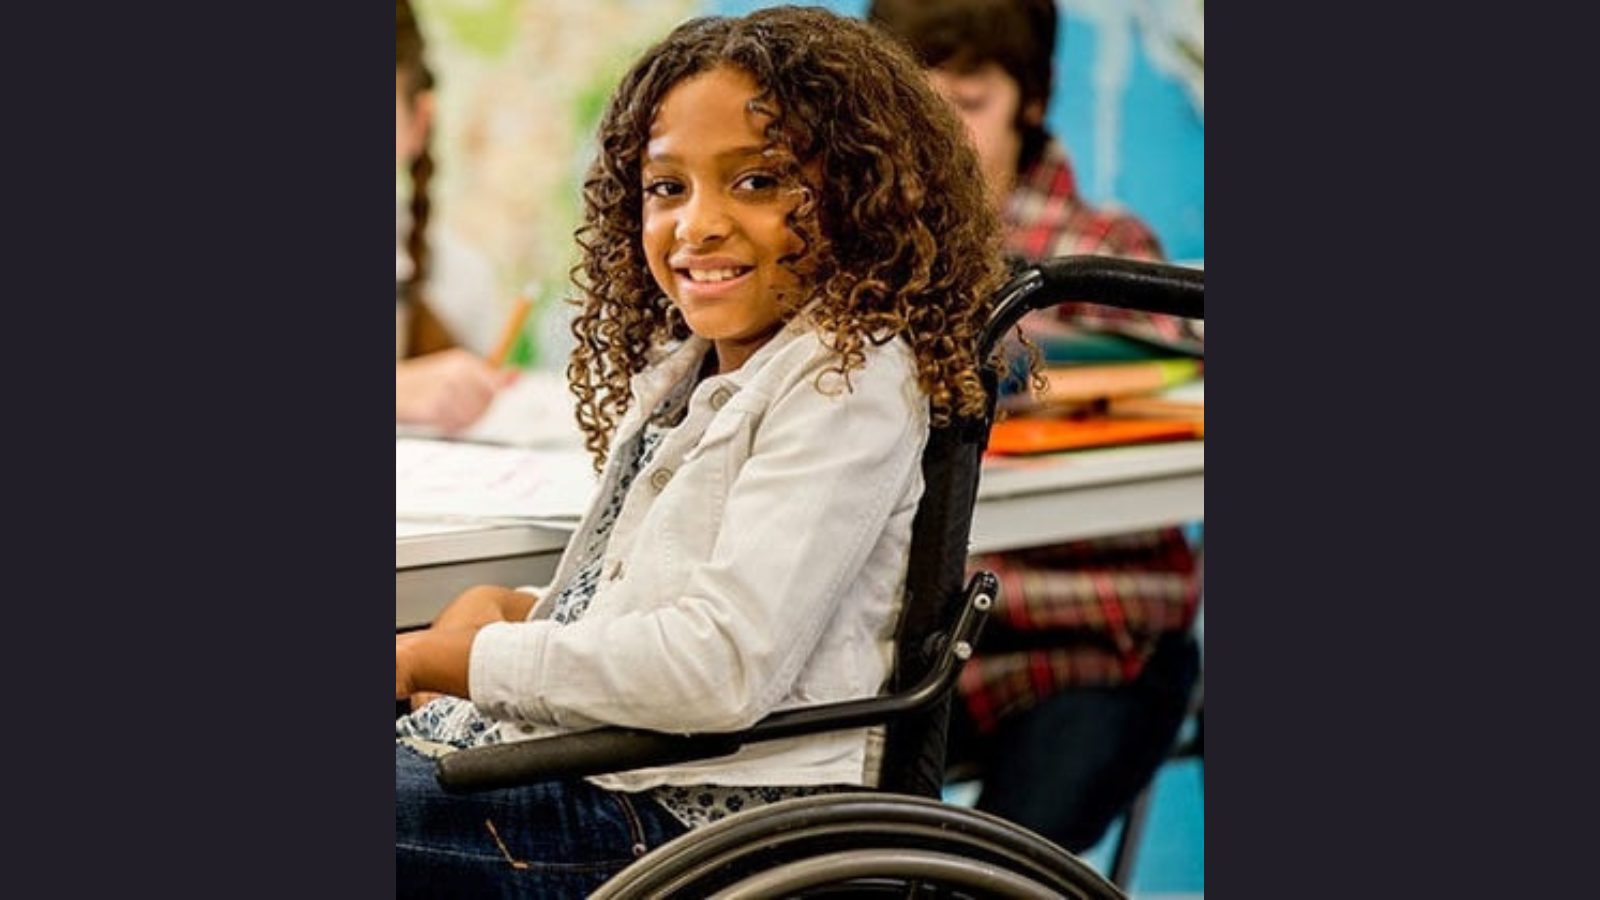 Child in Wheelchair 